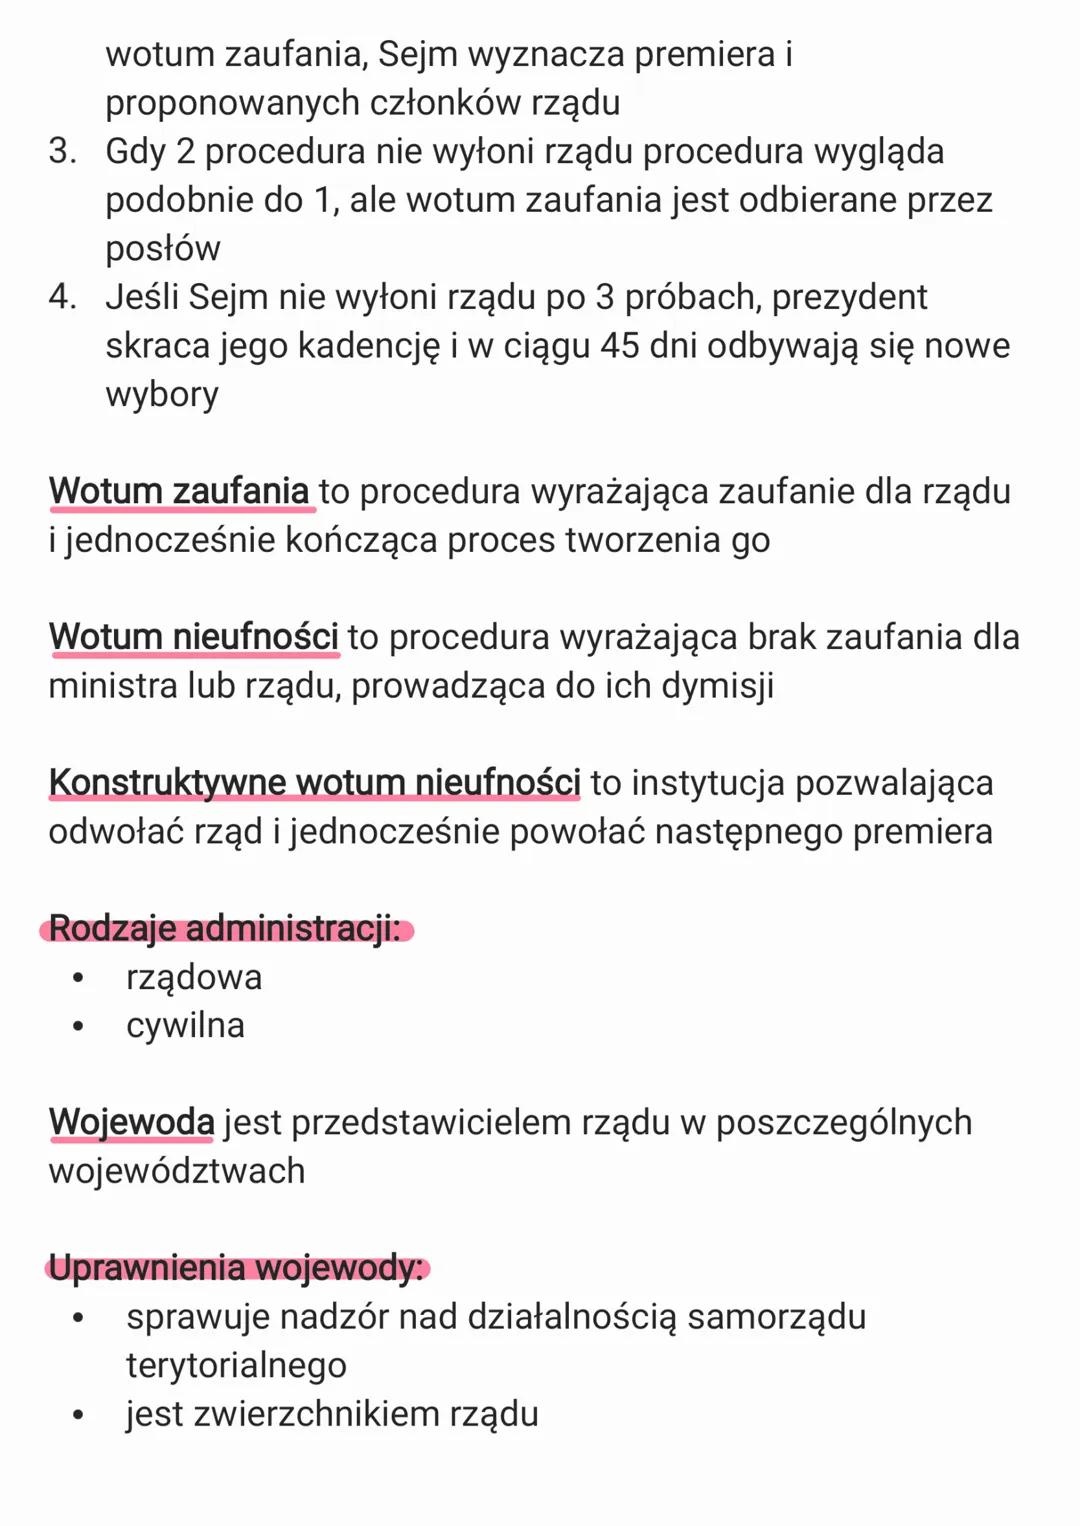 3. Organy władzy publicznej w
Polsce
3.1. Konstytucja Rzeczpospolitej Polskiej
Nazwa
Data
konstytucji uchwalenia
Konstytucja 3 3.05.1791
maj